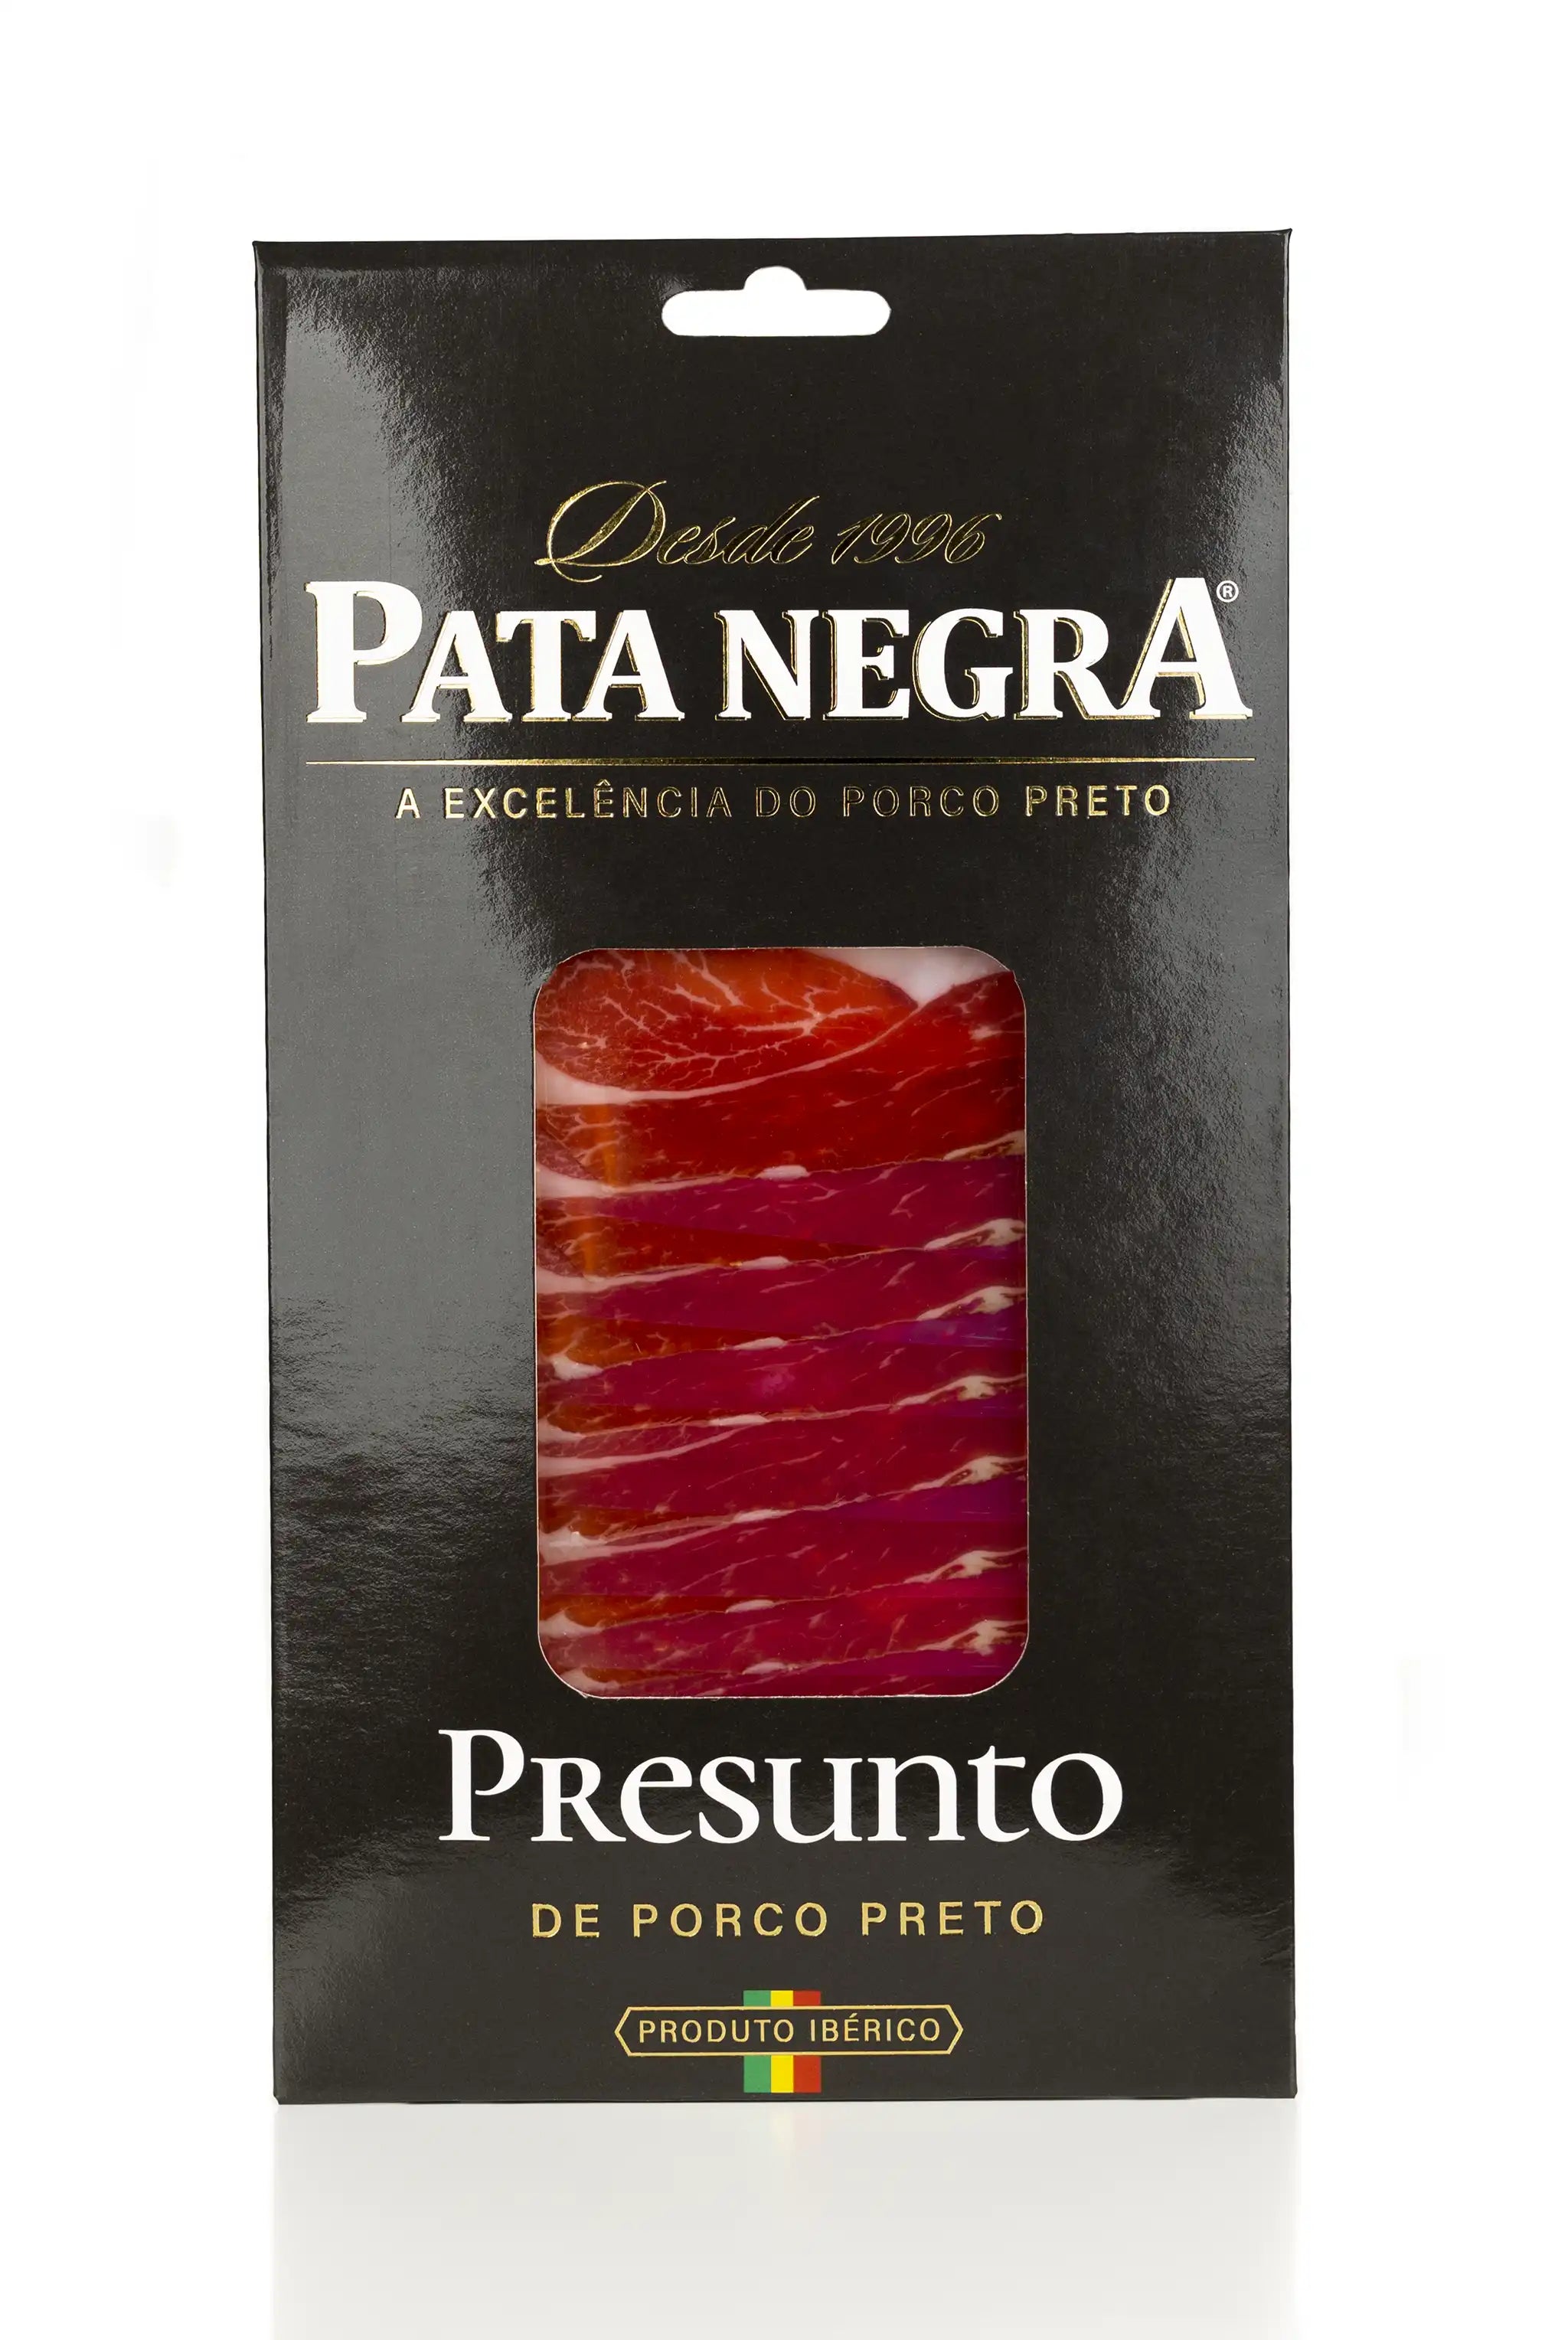 Price of Pata Negra ham (PataNegra)